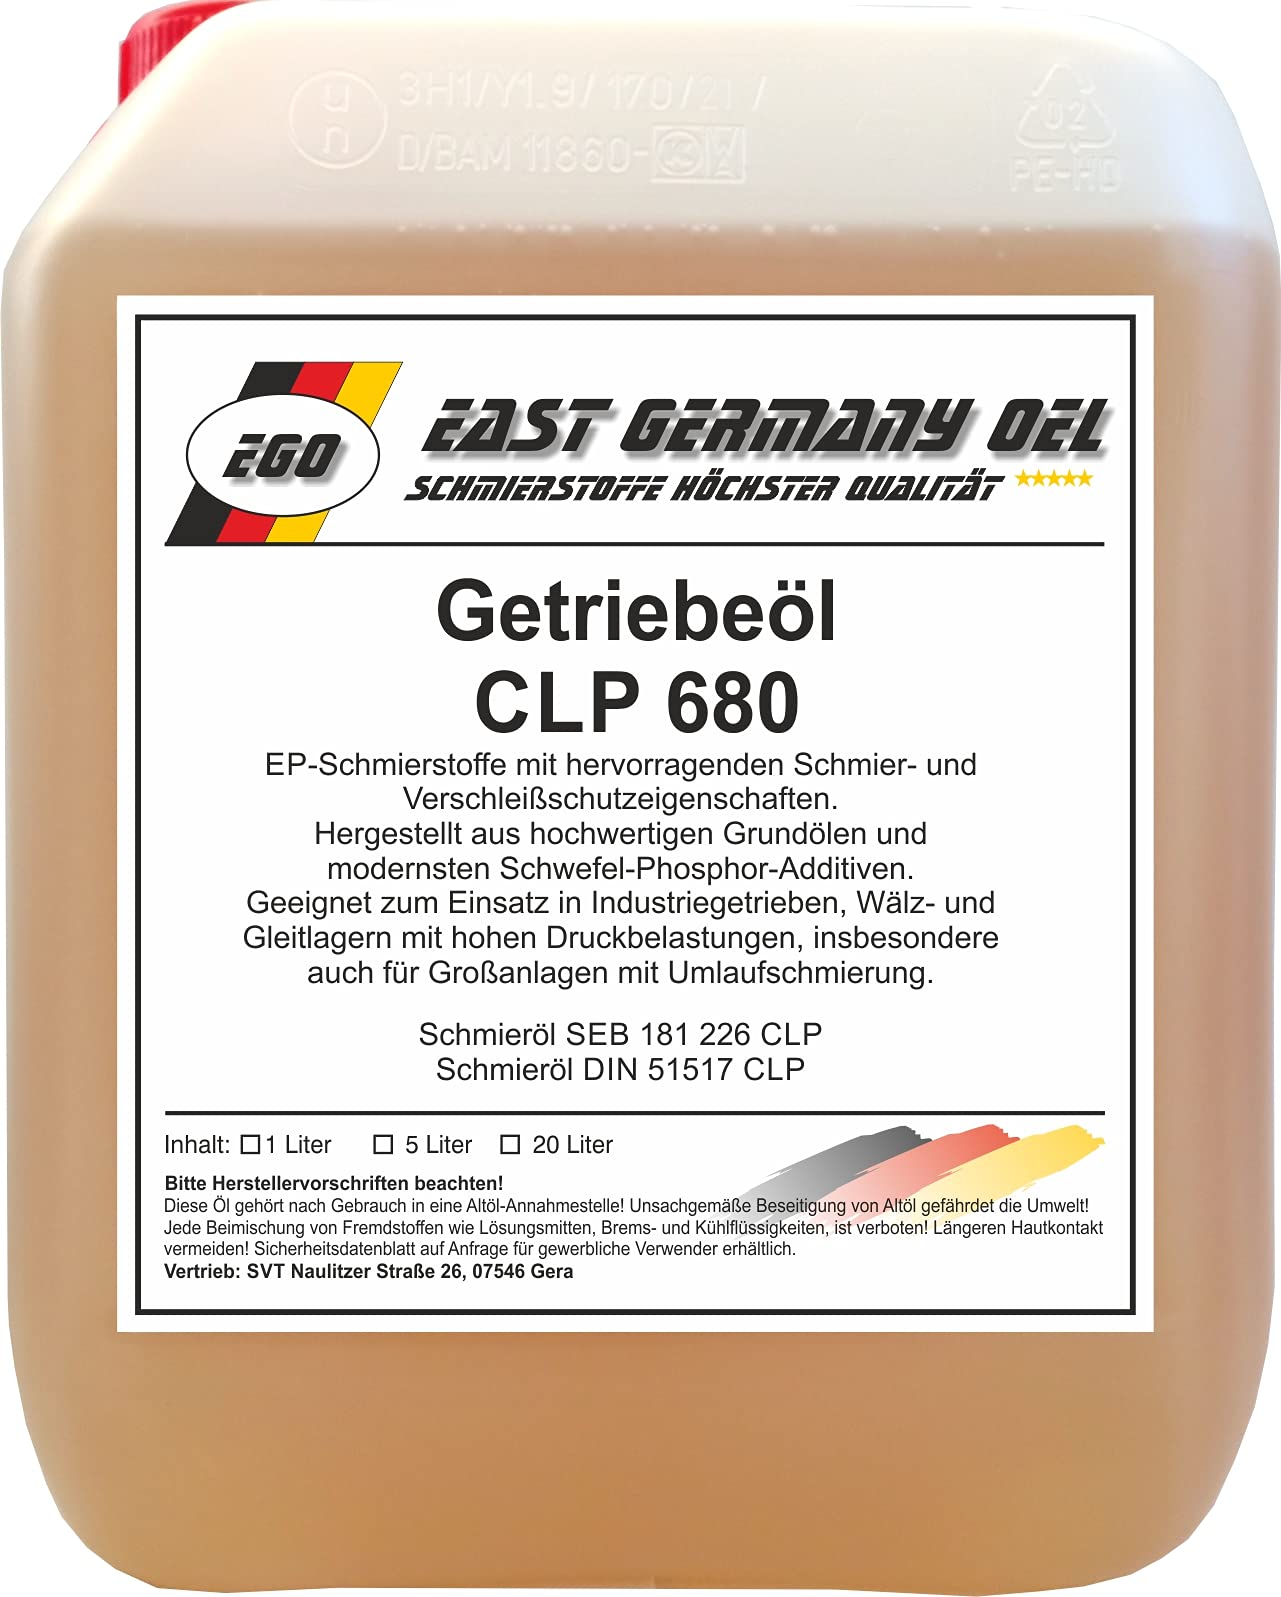 Getriebeöl CLP 680 Kanister 5 Liter von East Germany OIL